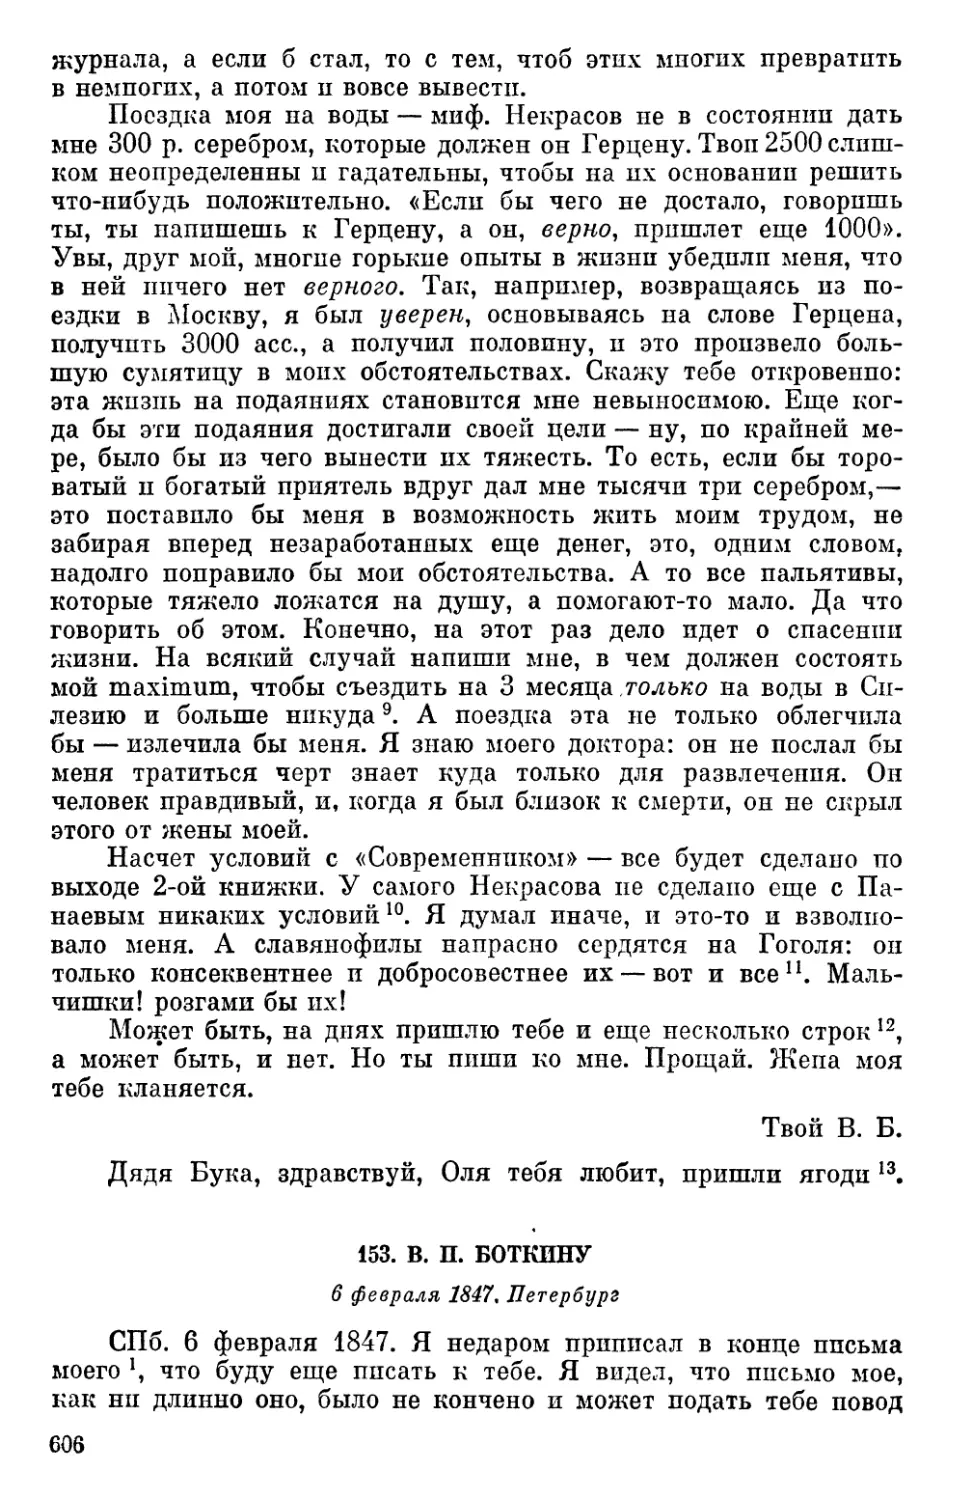 153. В. П. Боткину. 6 февраля 1847